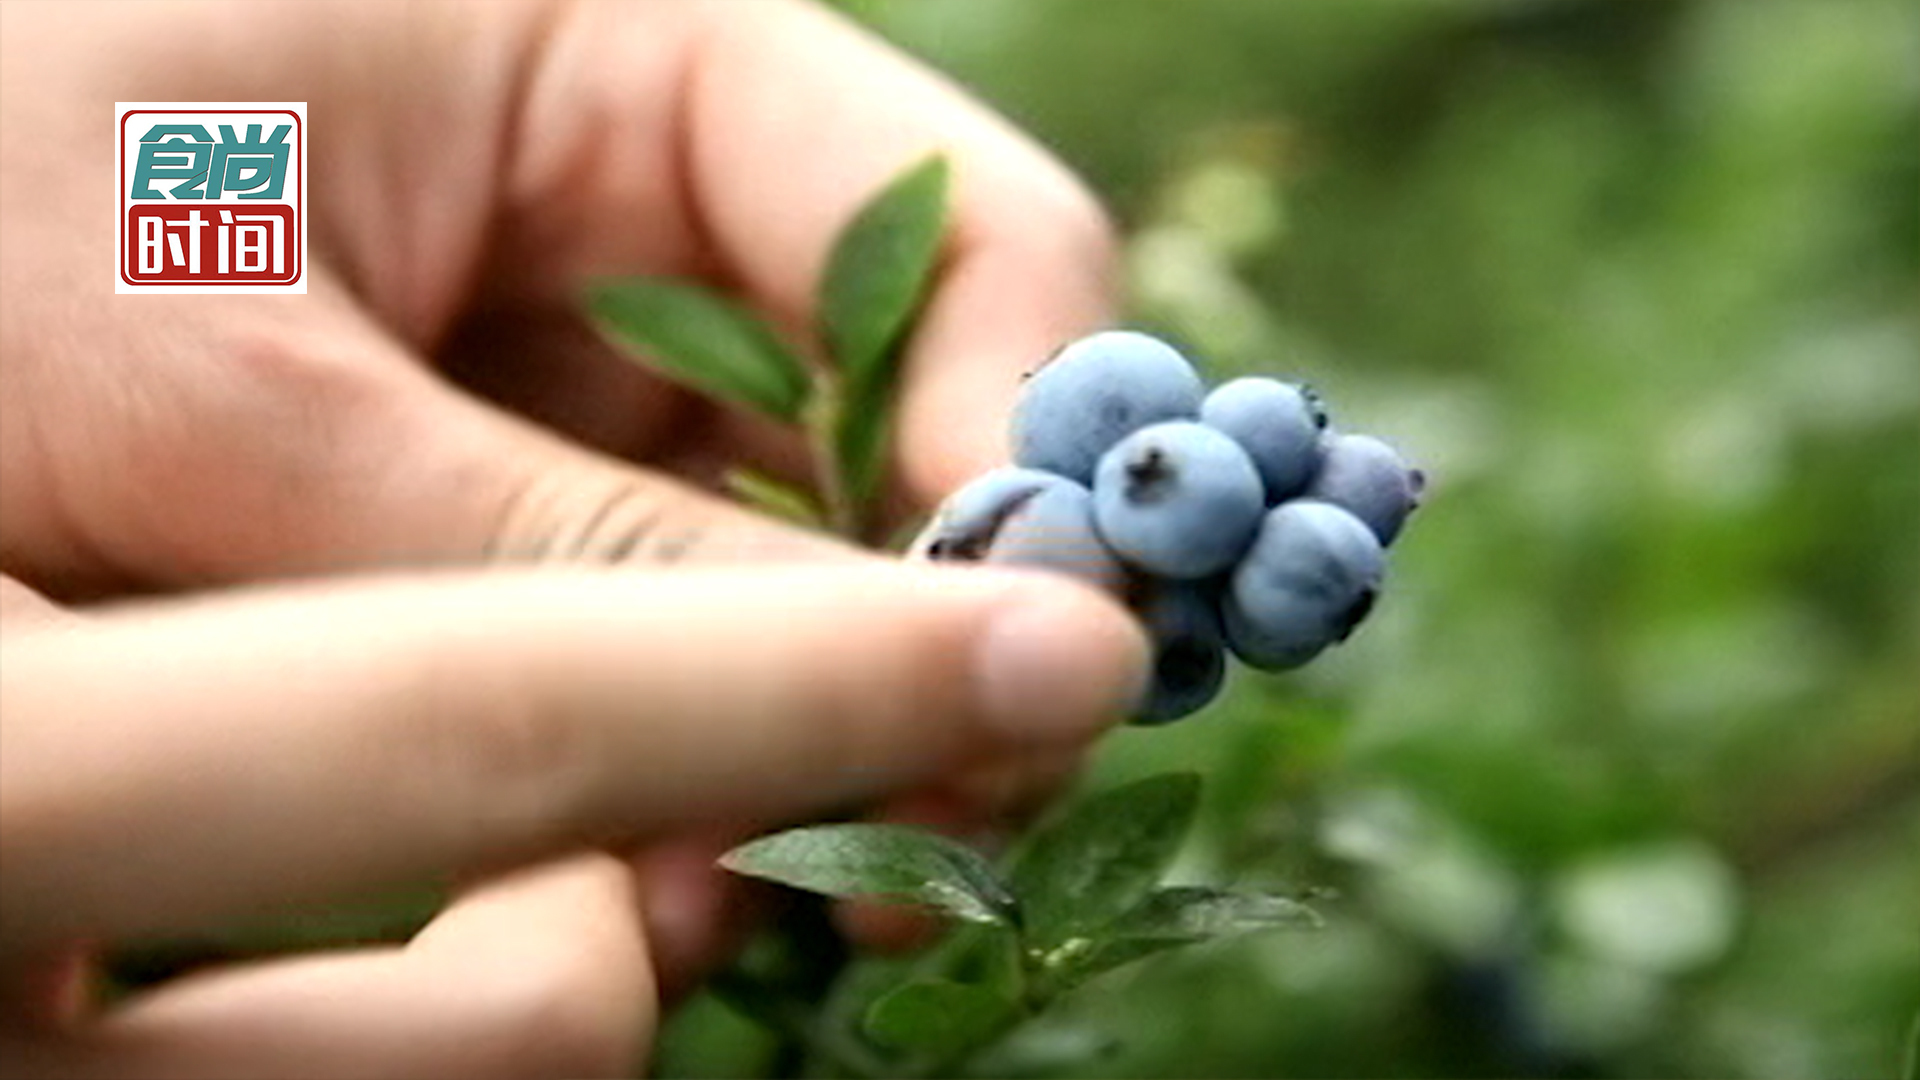 “莓”力无穷！在这里“果迷”们可以轻易实现“蓝莓自由”